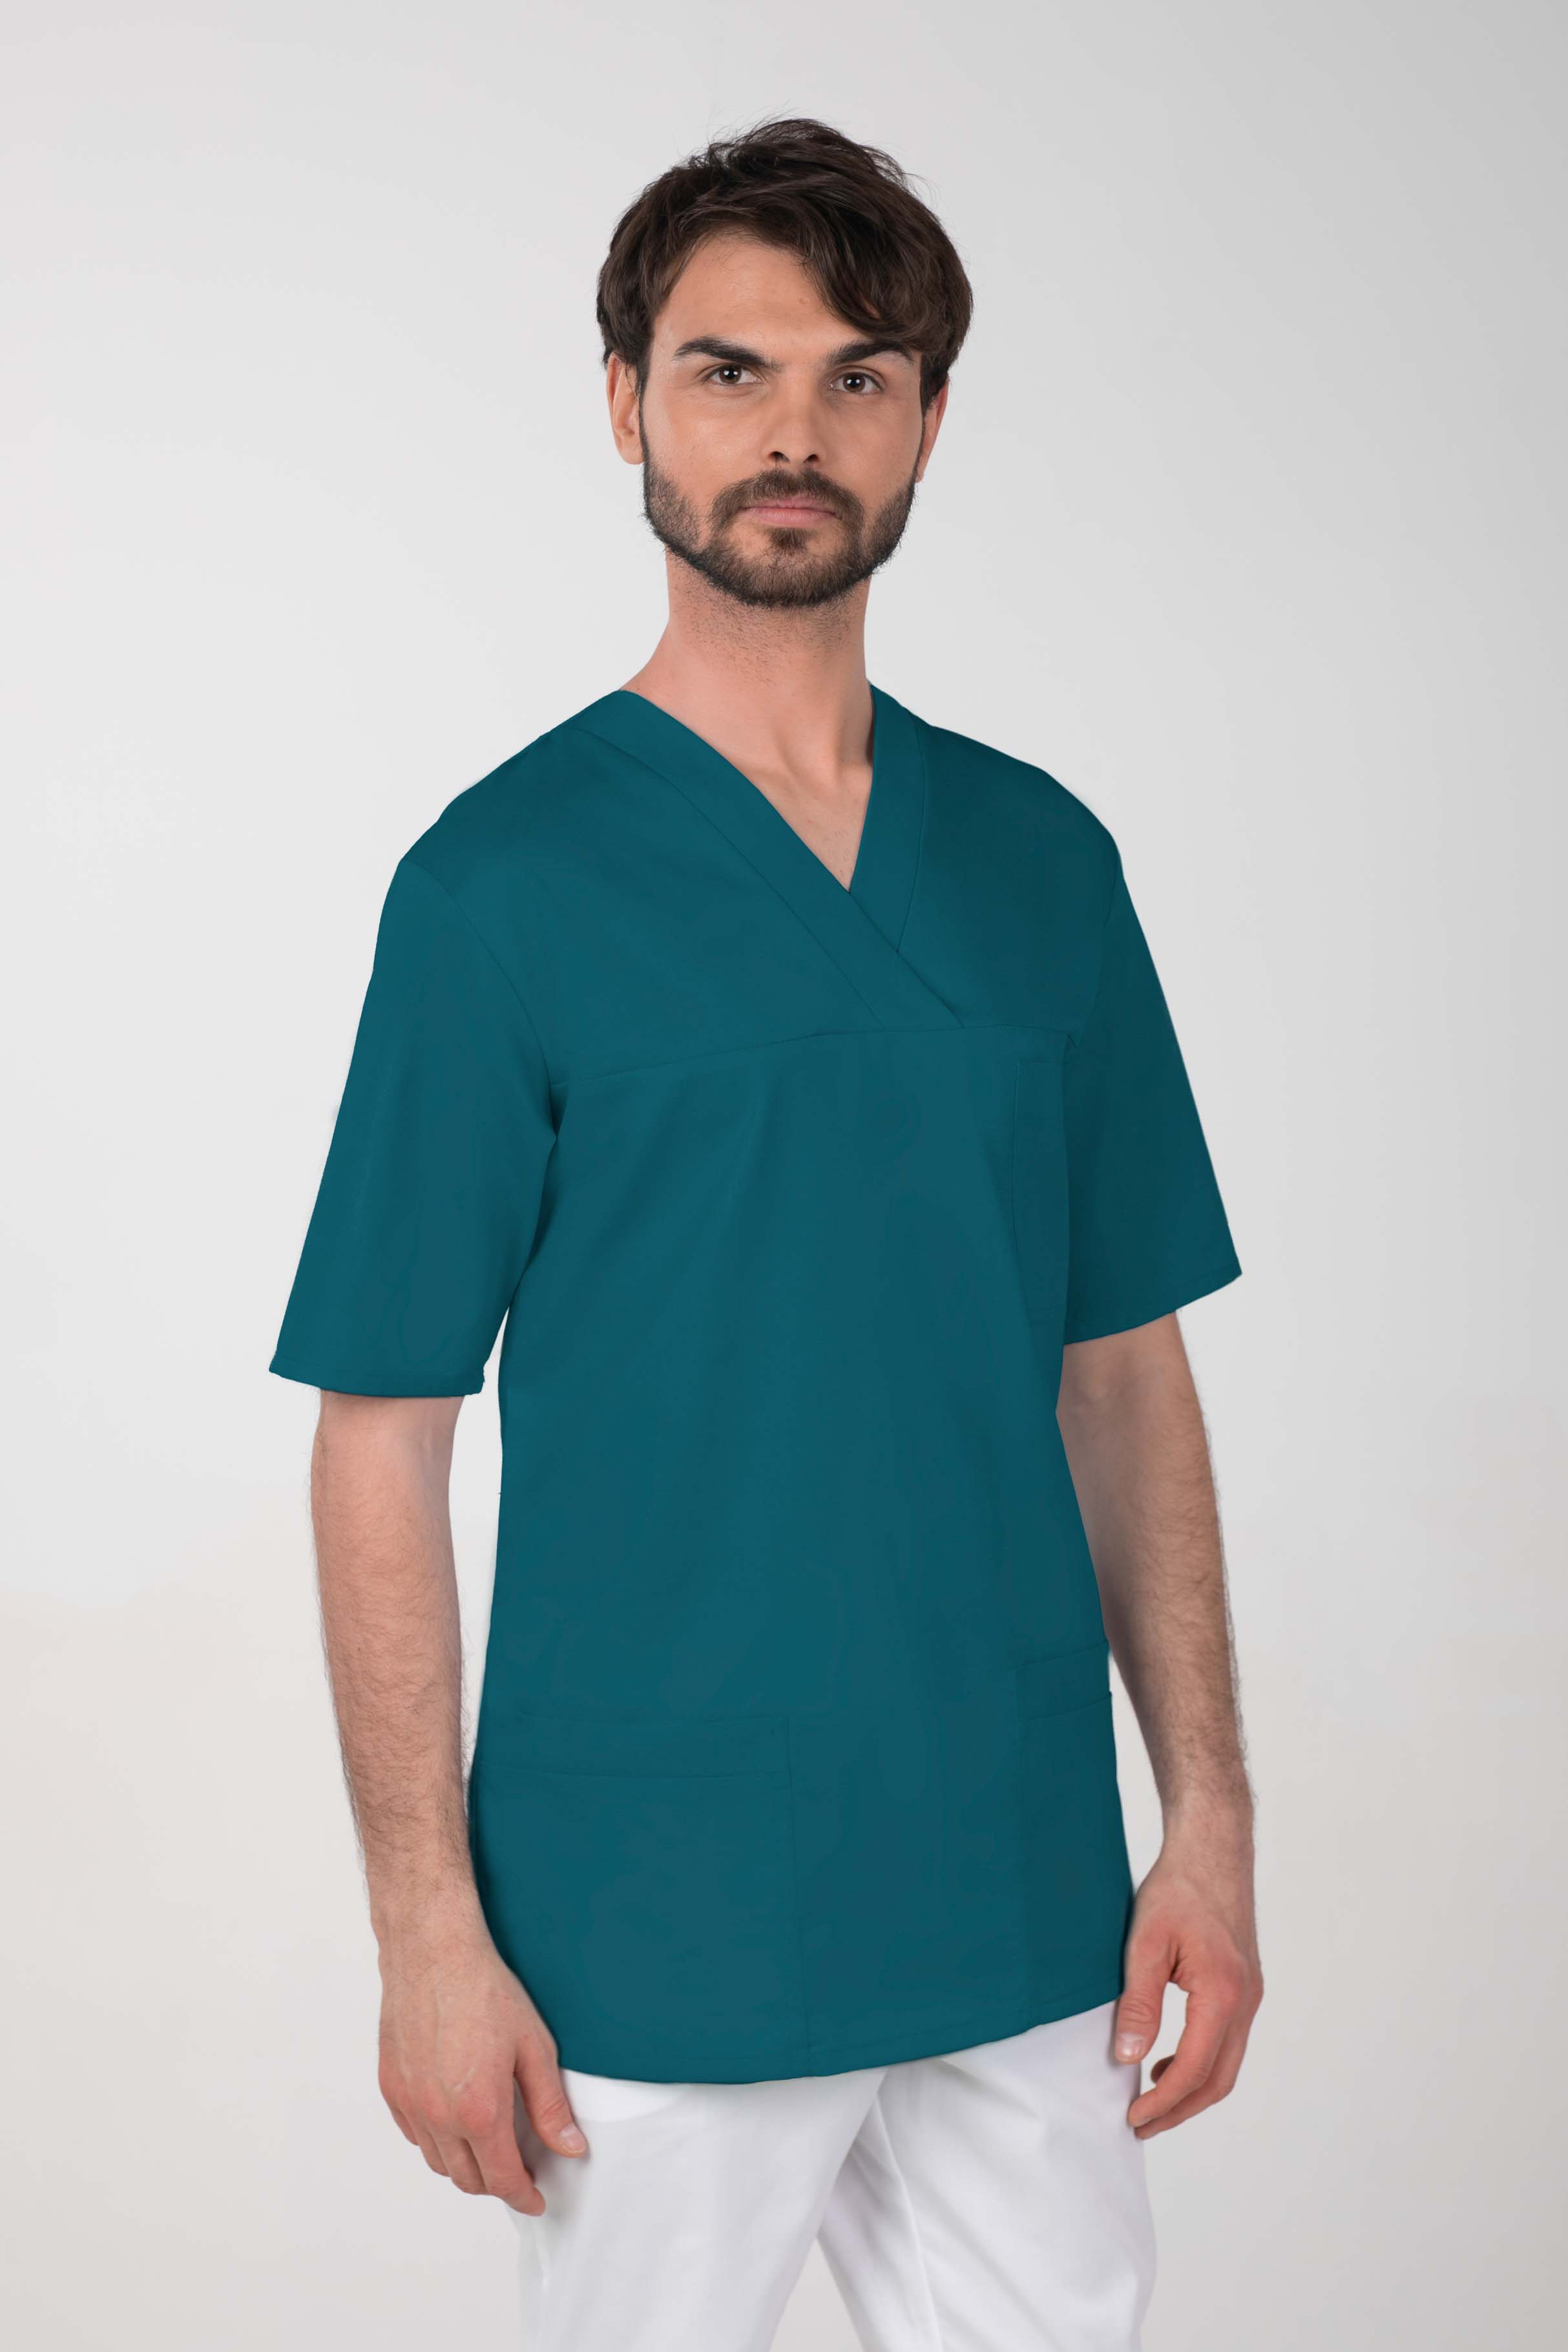 Pánská barevná zdravotnická košile M-074C, tmavě zelená